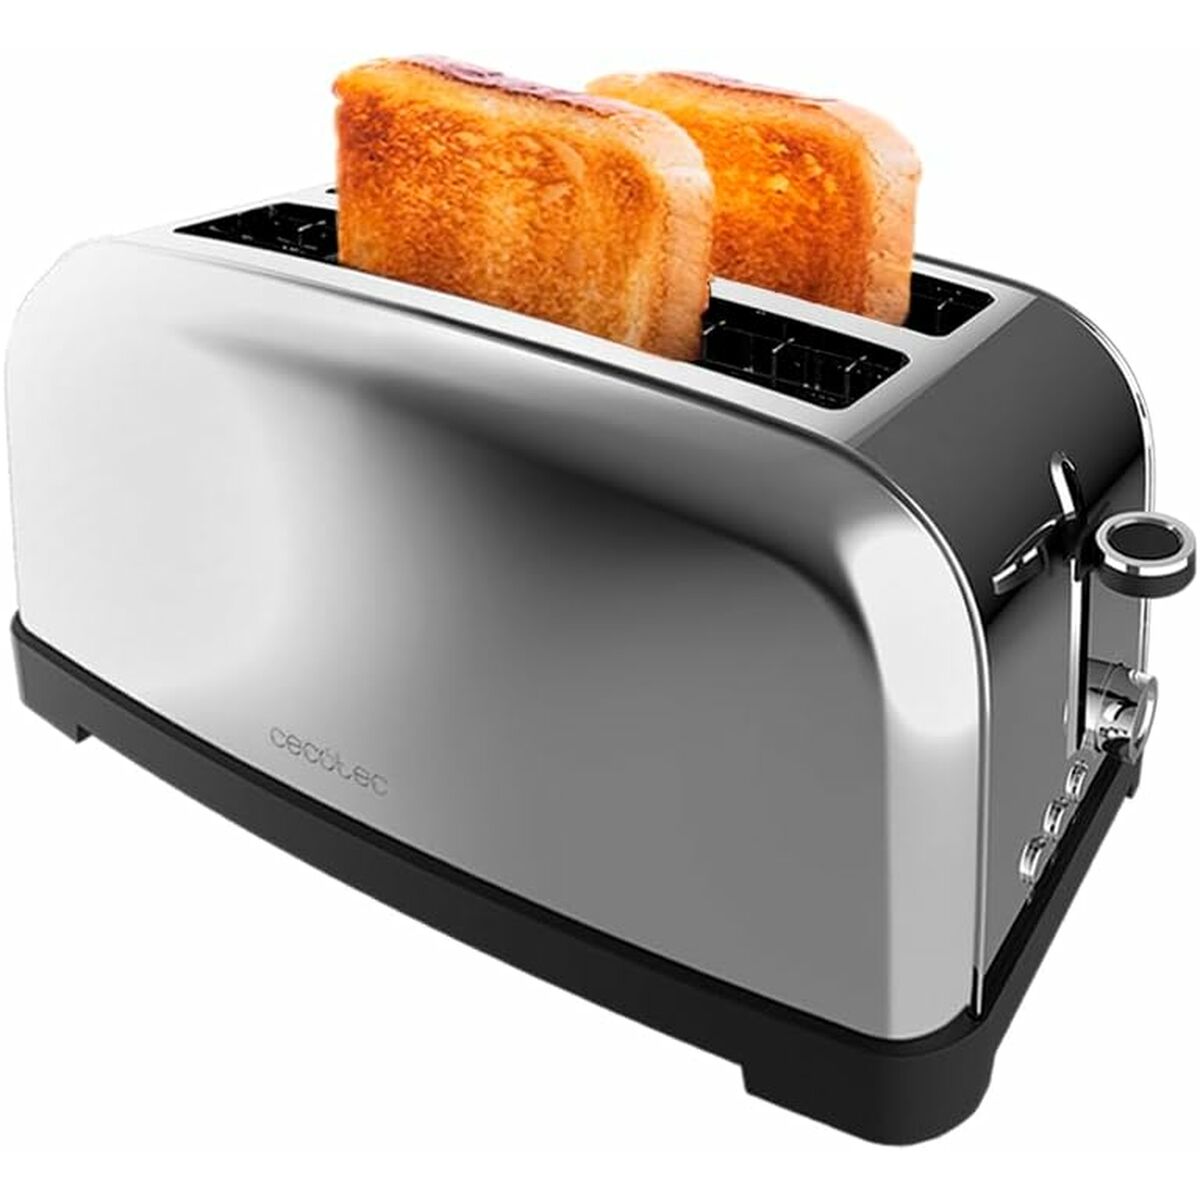 Kaufe Toaster Cecotec Toastin' time 1500 Inox 1500 W bei AWK Flagship um € 62.00